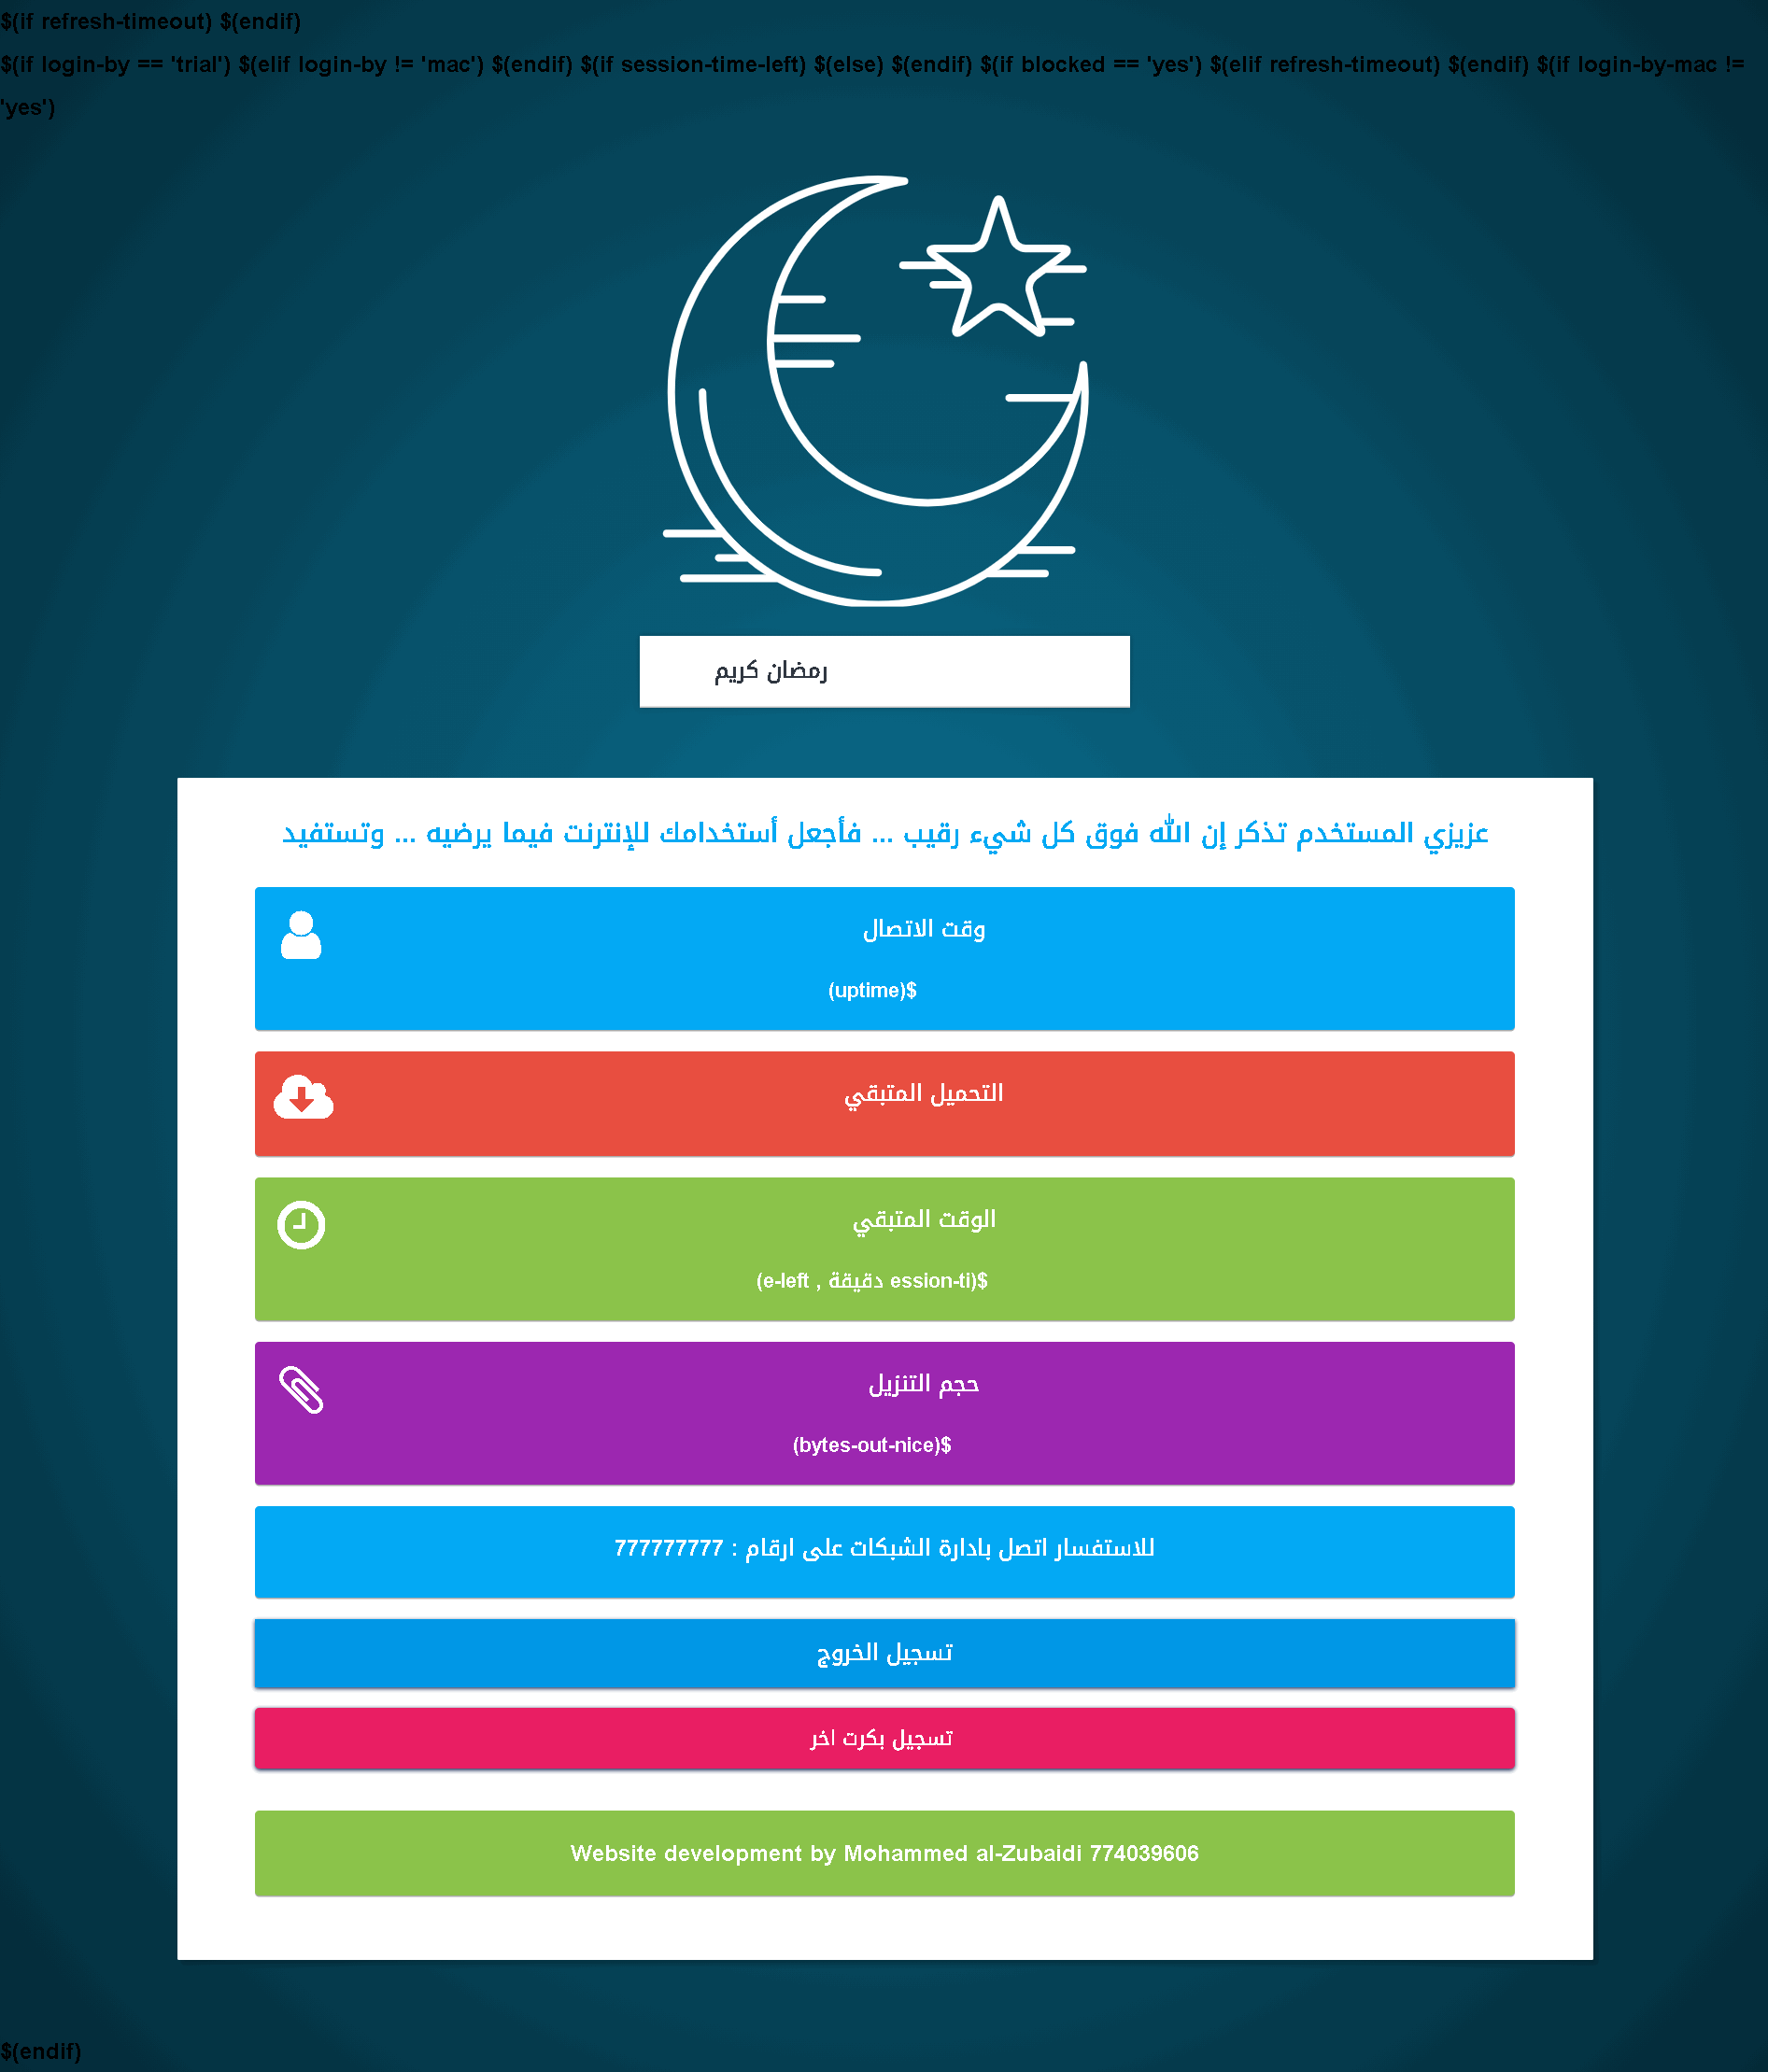 صفحة هوت سبوت للمايكروتك 2021 شهر رمضان